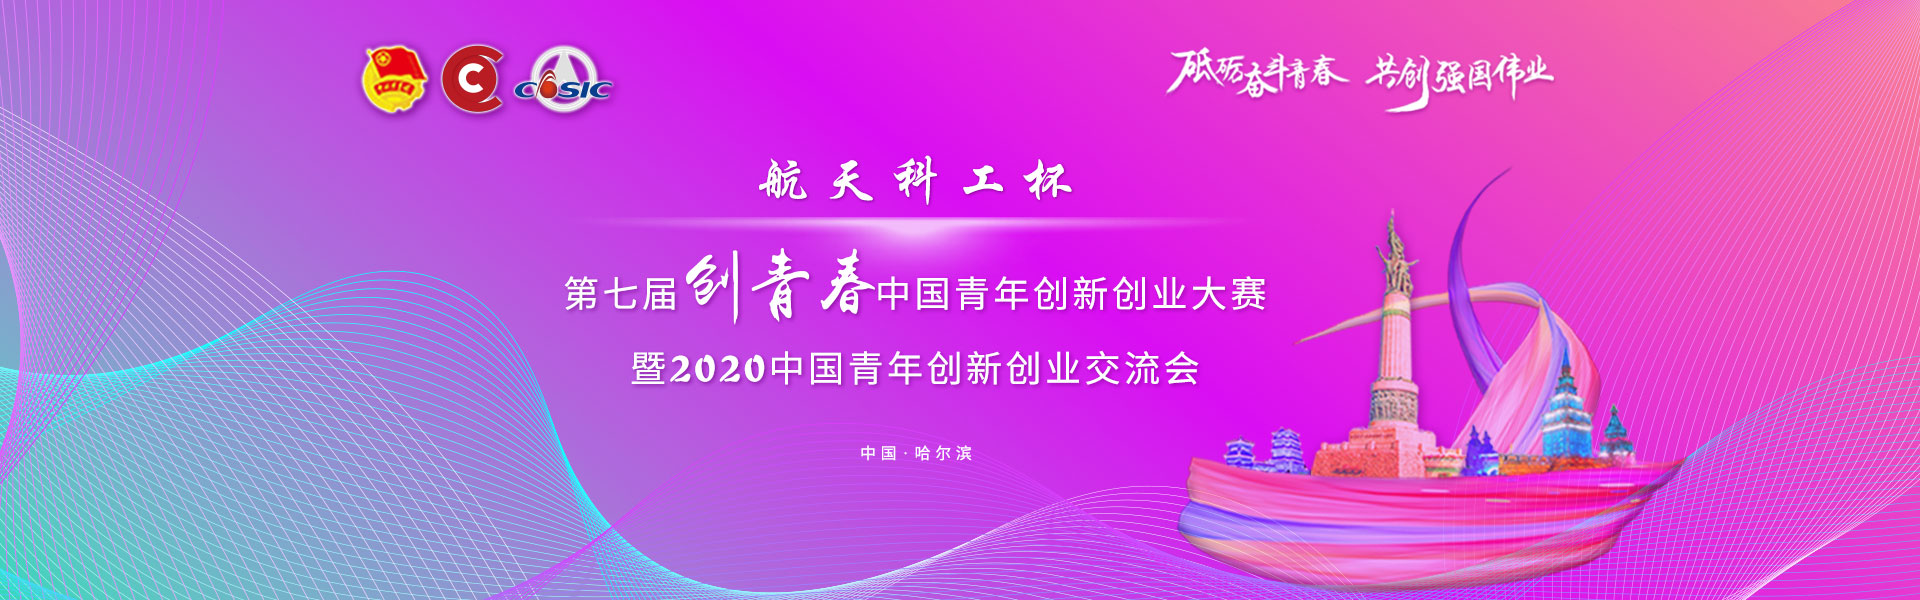 20200904 chuangqingchun